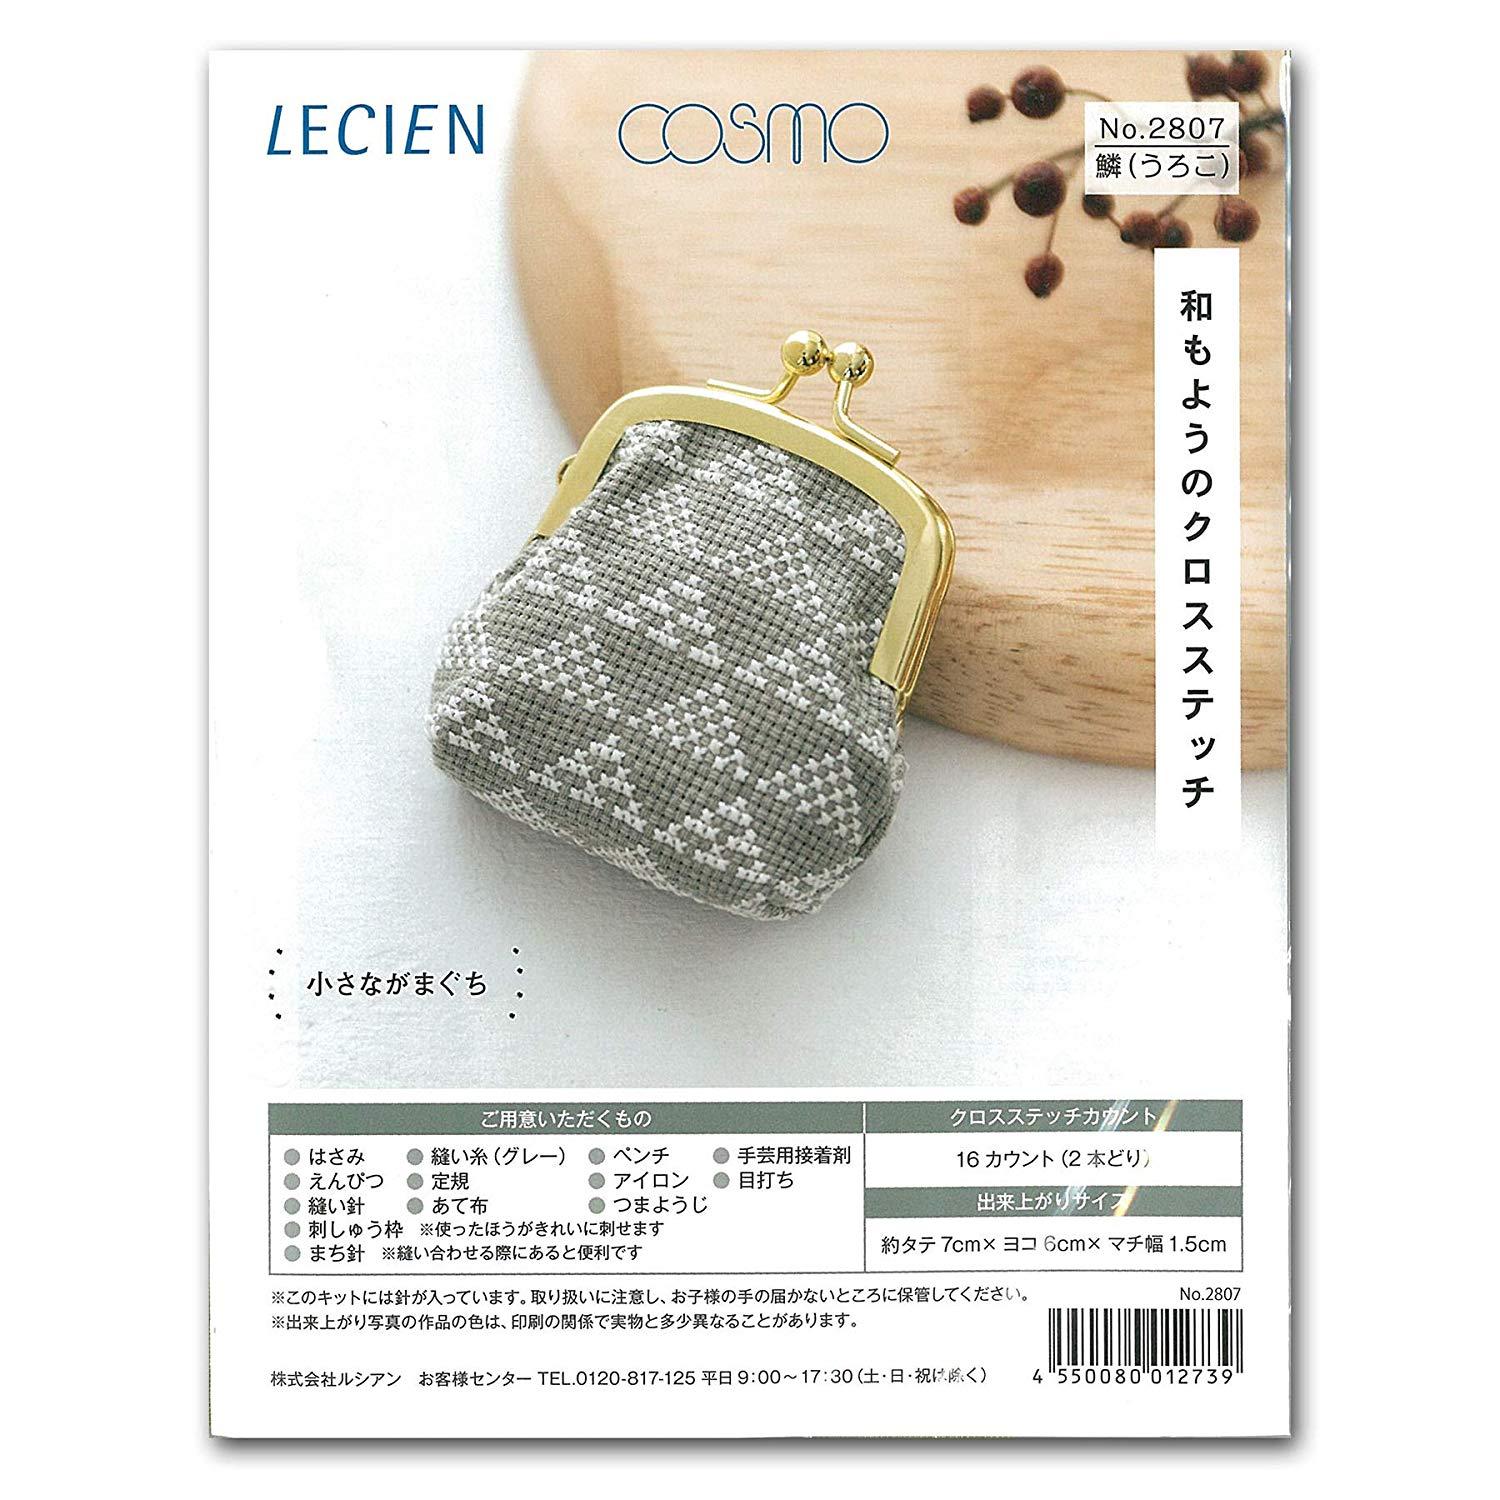 LECIEN (ルシアン) 刺繍キット 和もようのクロスステッチ 小さながまぐち 鱗(うろこ)・2807 (1402682)